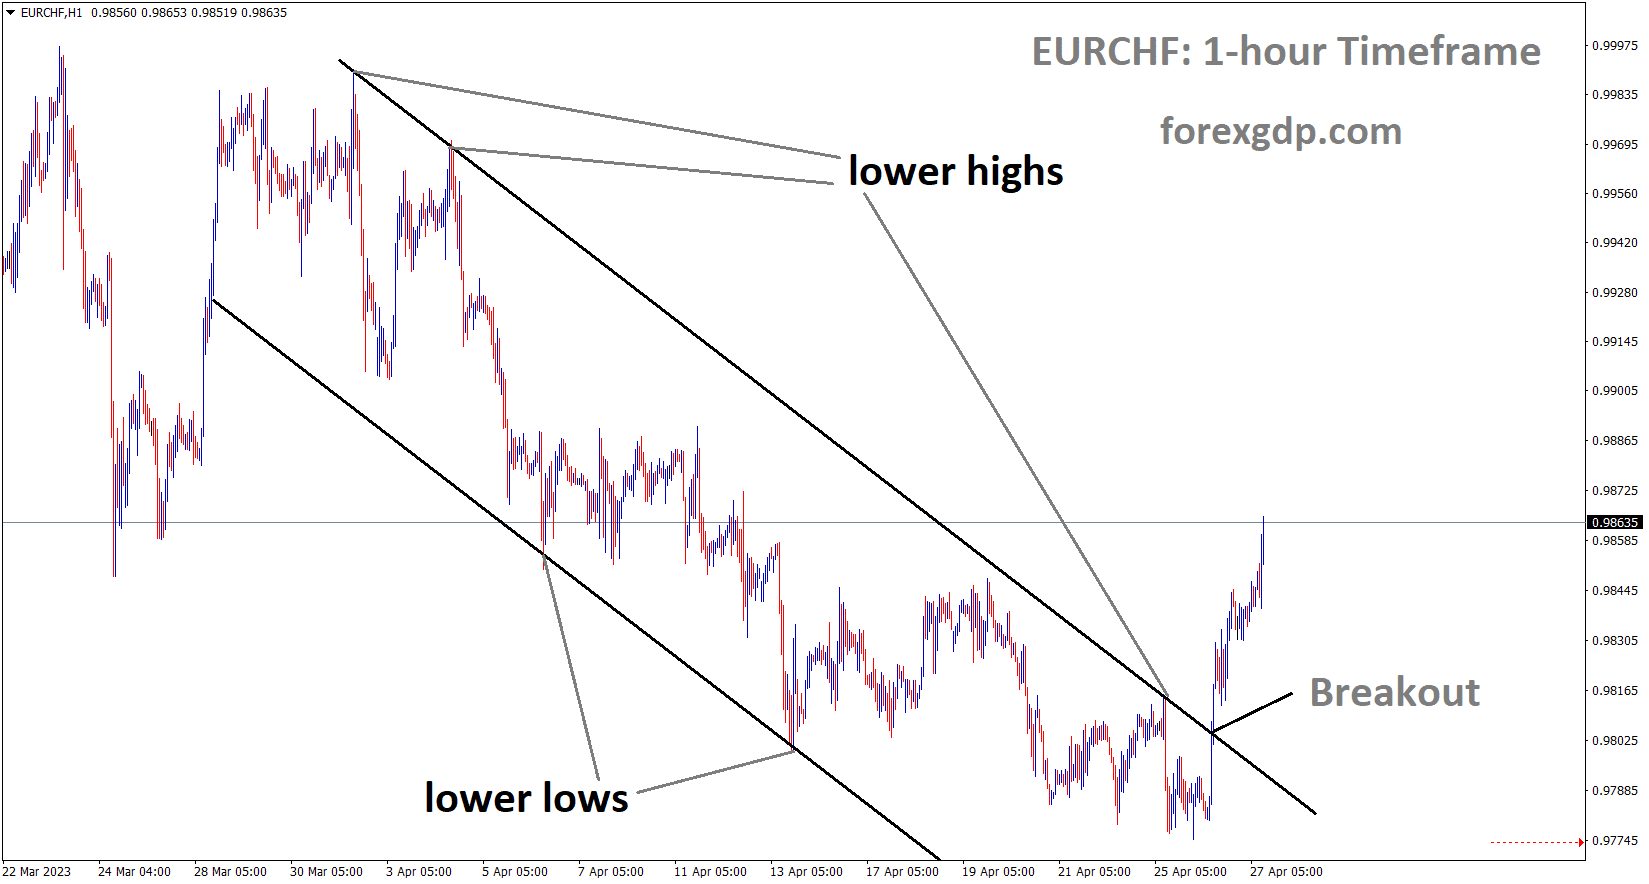 EURCHF has broken the Descending channel in Upside